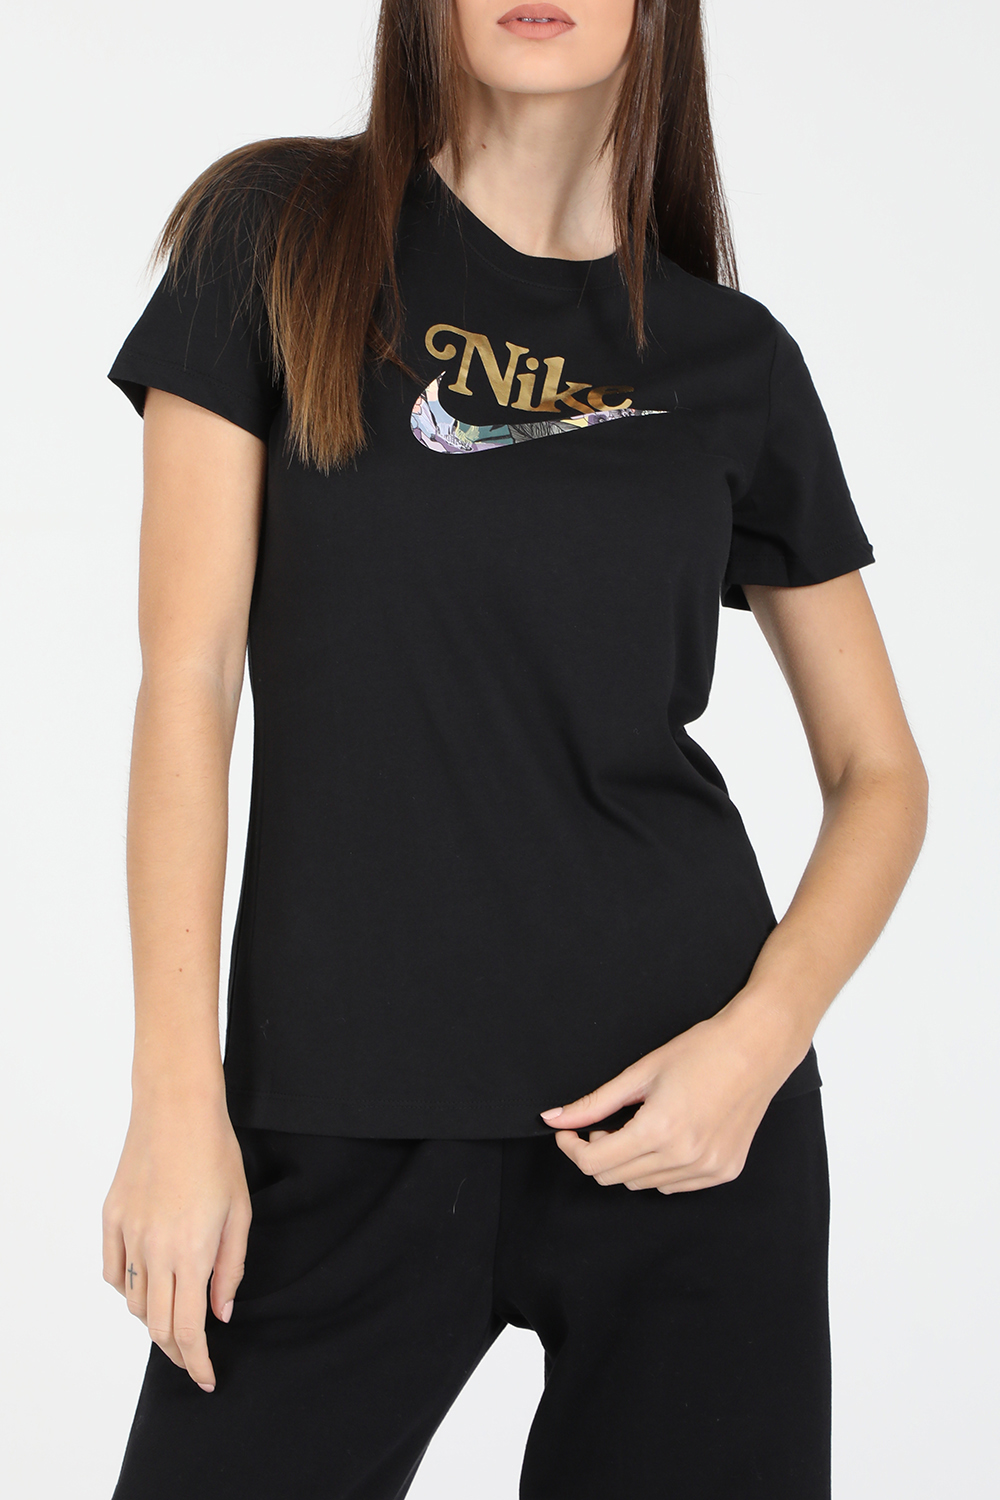 Γυναικεία/Ρούχα/Αθλητικά/T-shirt-Τοπ NIKE - Γυναικείο t-shirt NIKE NSW TEE FEMME μαύρο